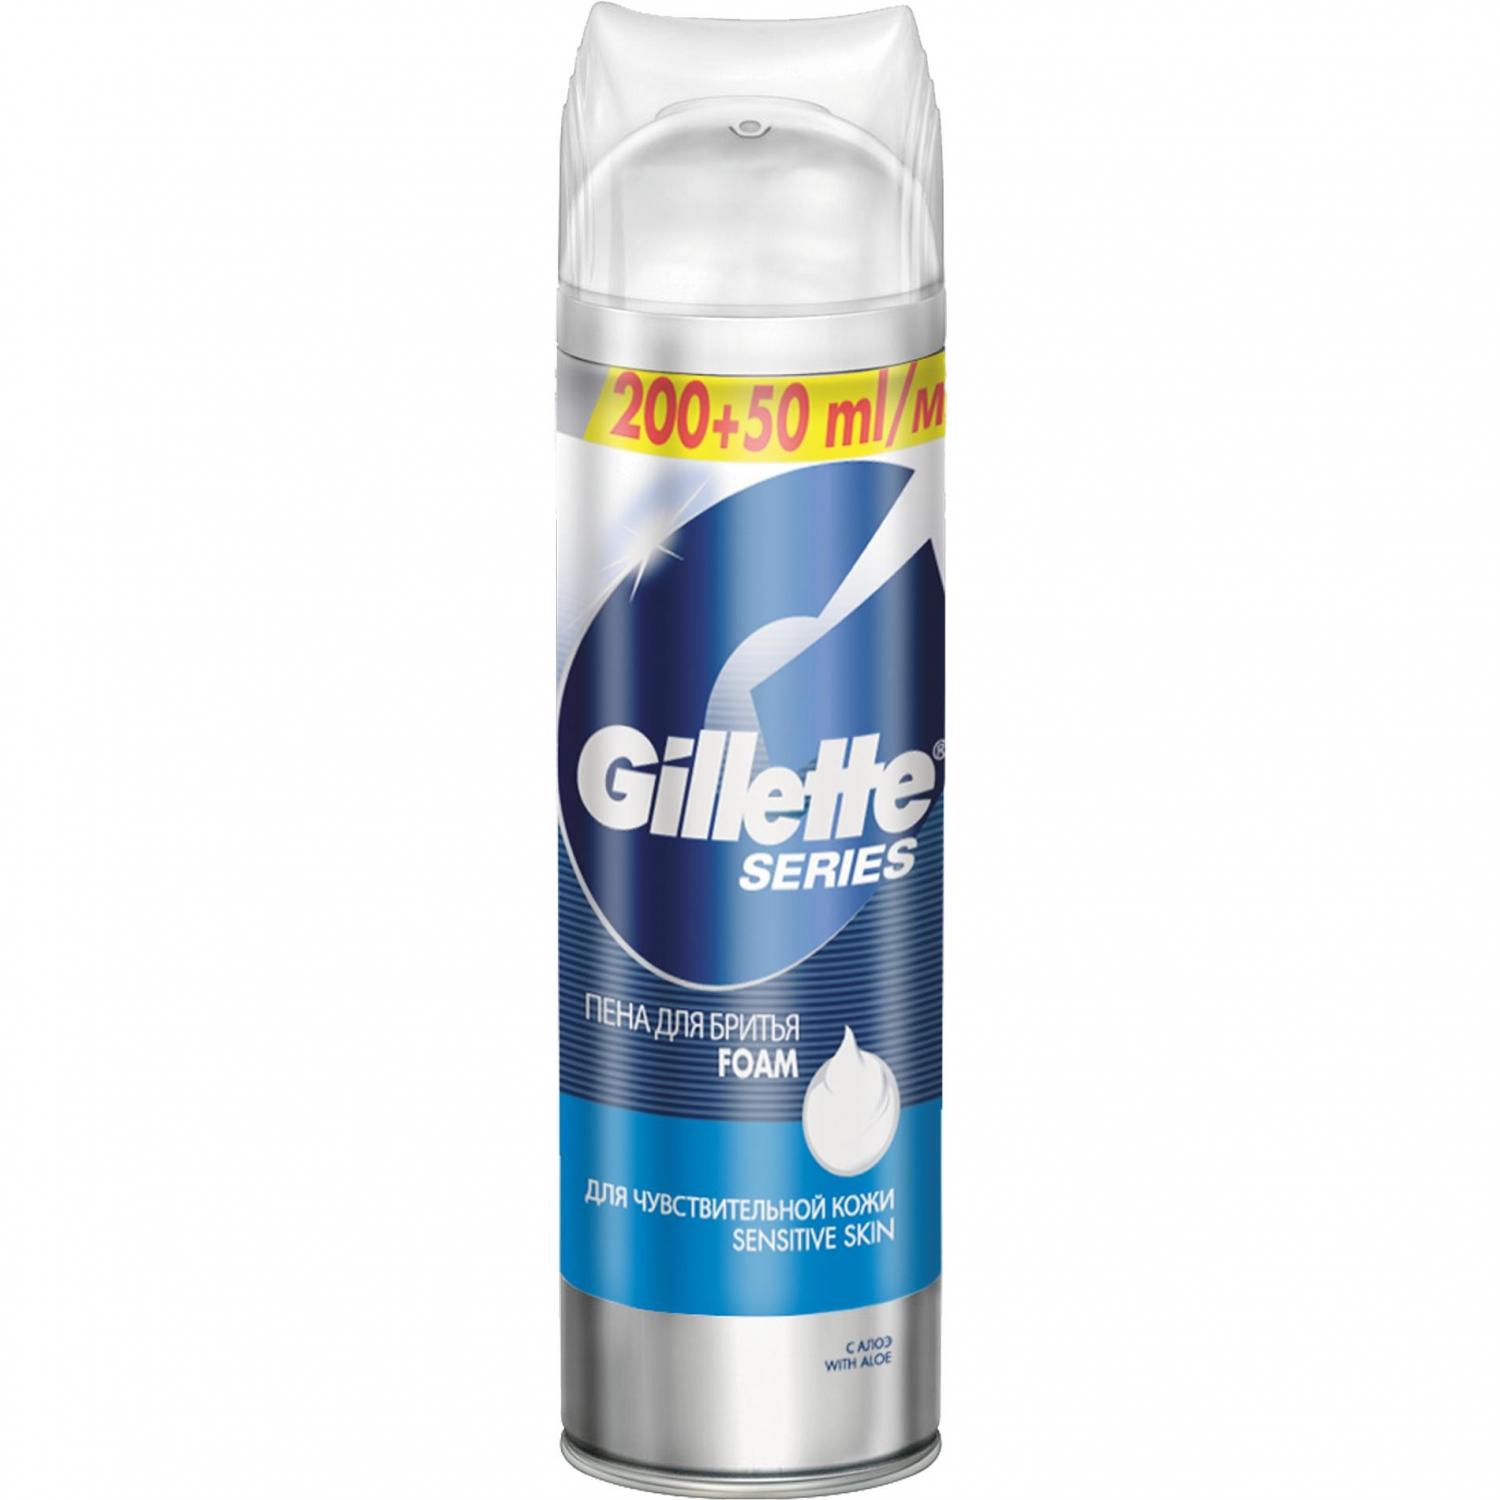 Пена для бритья Gillette Series Для чувствительной кожи, 250мл (Артикул: 1644)